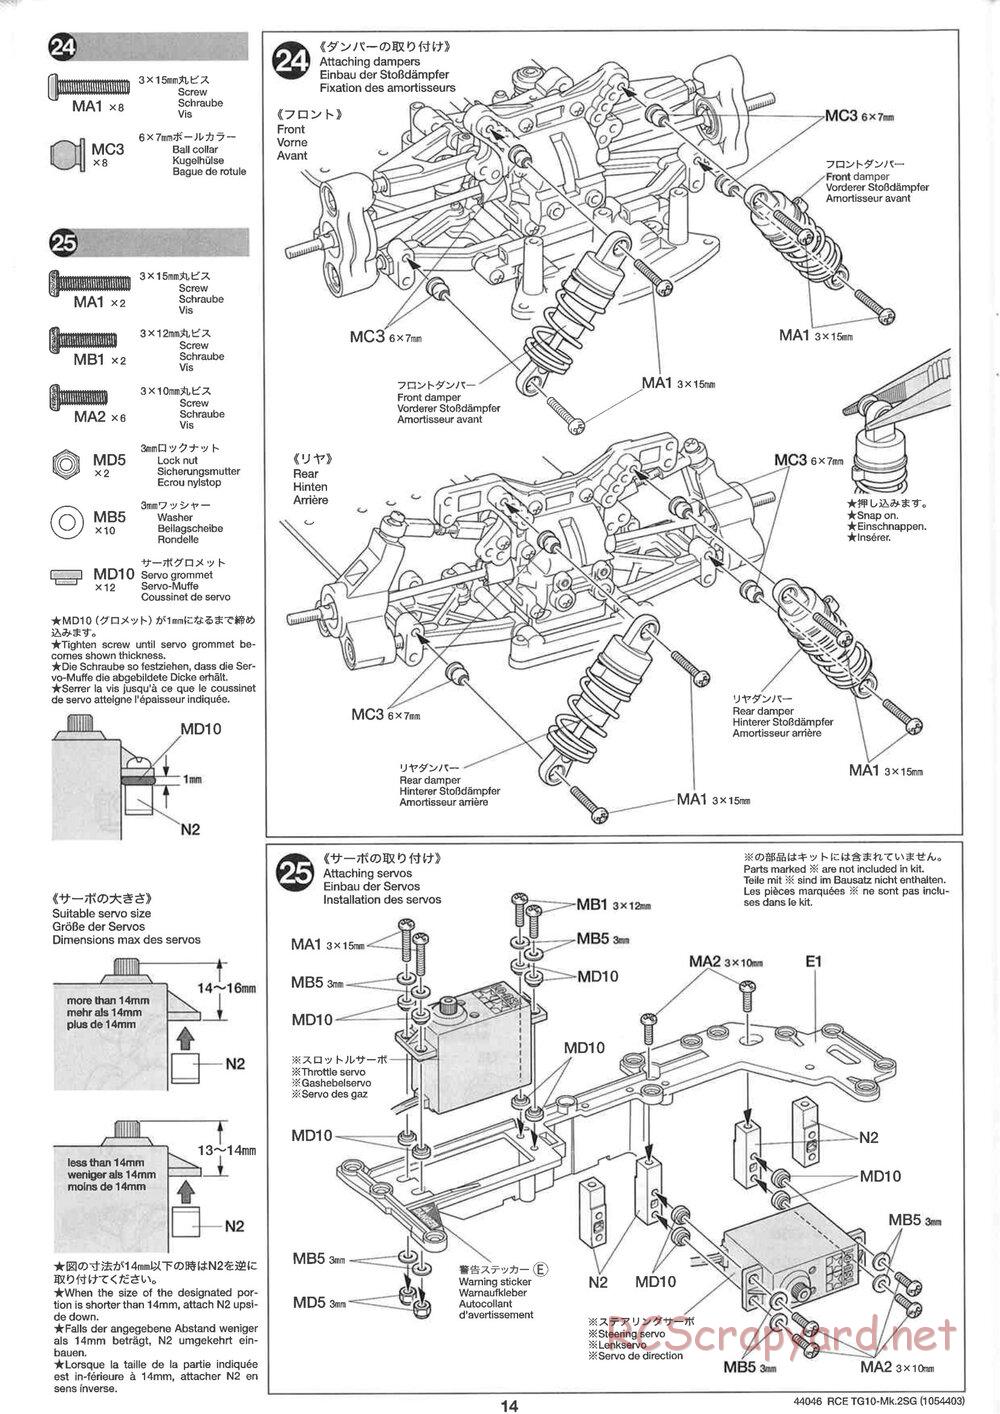 Tamiya - TG10 Mk.2SG Chassis - Manual - Page 14